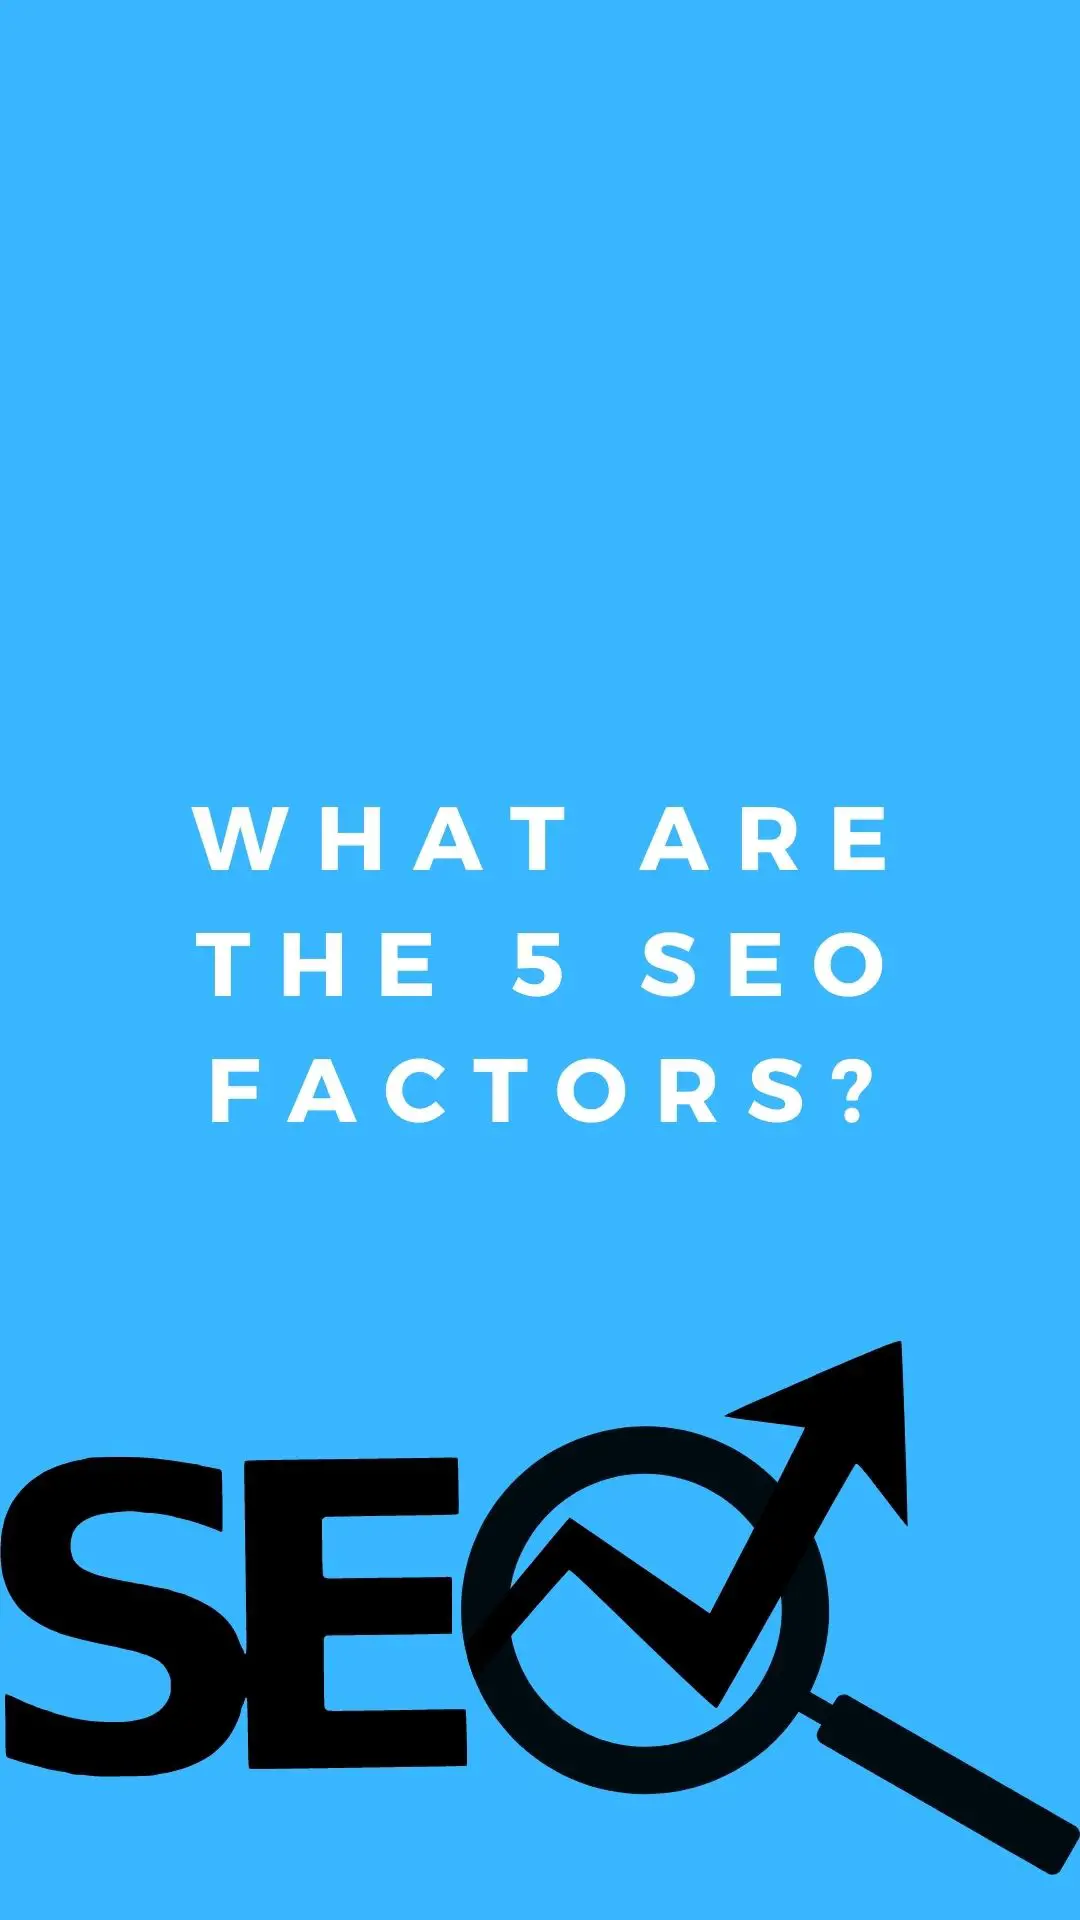 Quali sono i 5 fattori SEO?: Ricerca parole chiave, ottimizzazione URL, meta tag, tag header, ottimizzazione dei contenuti